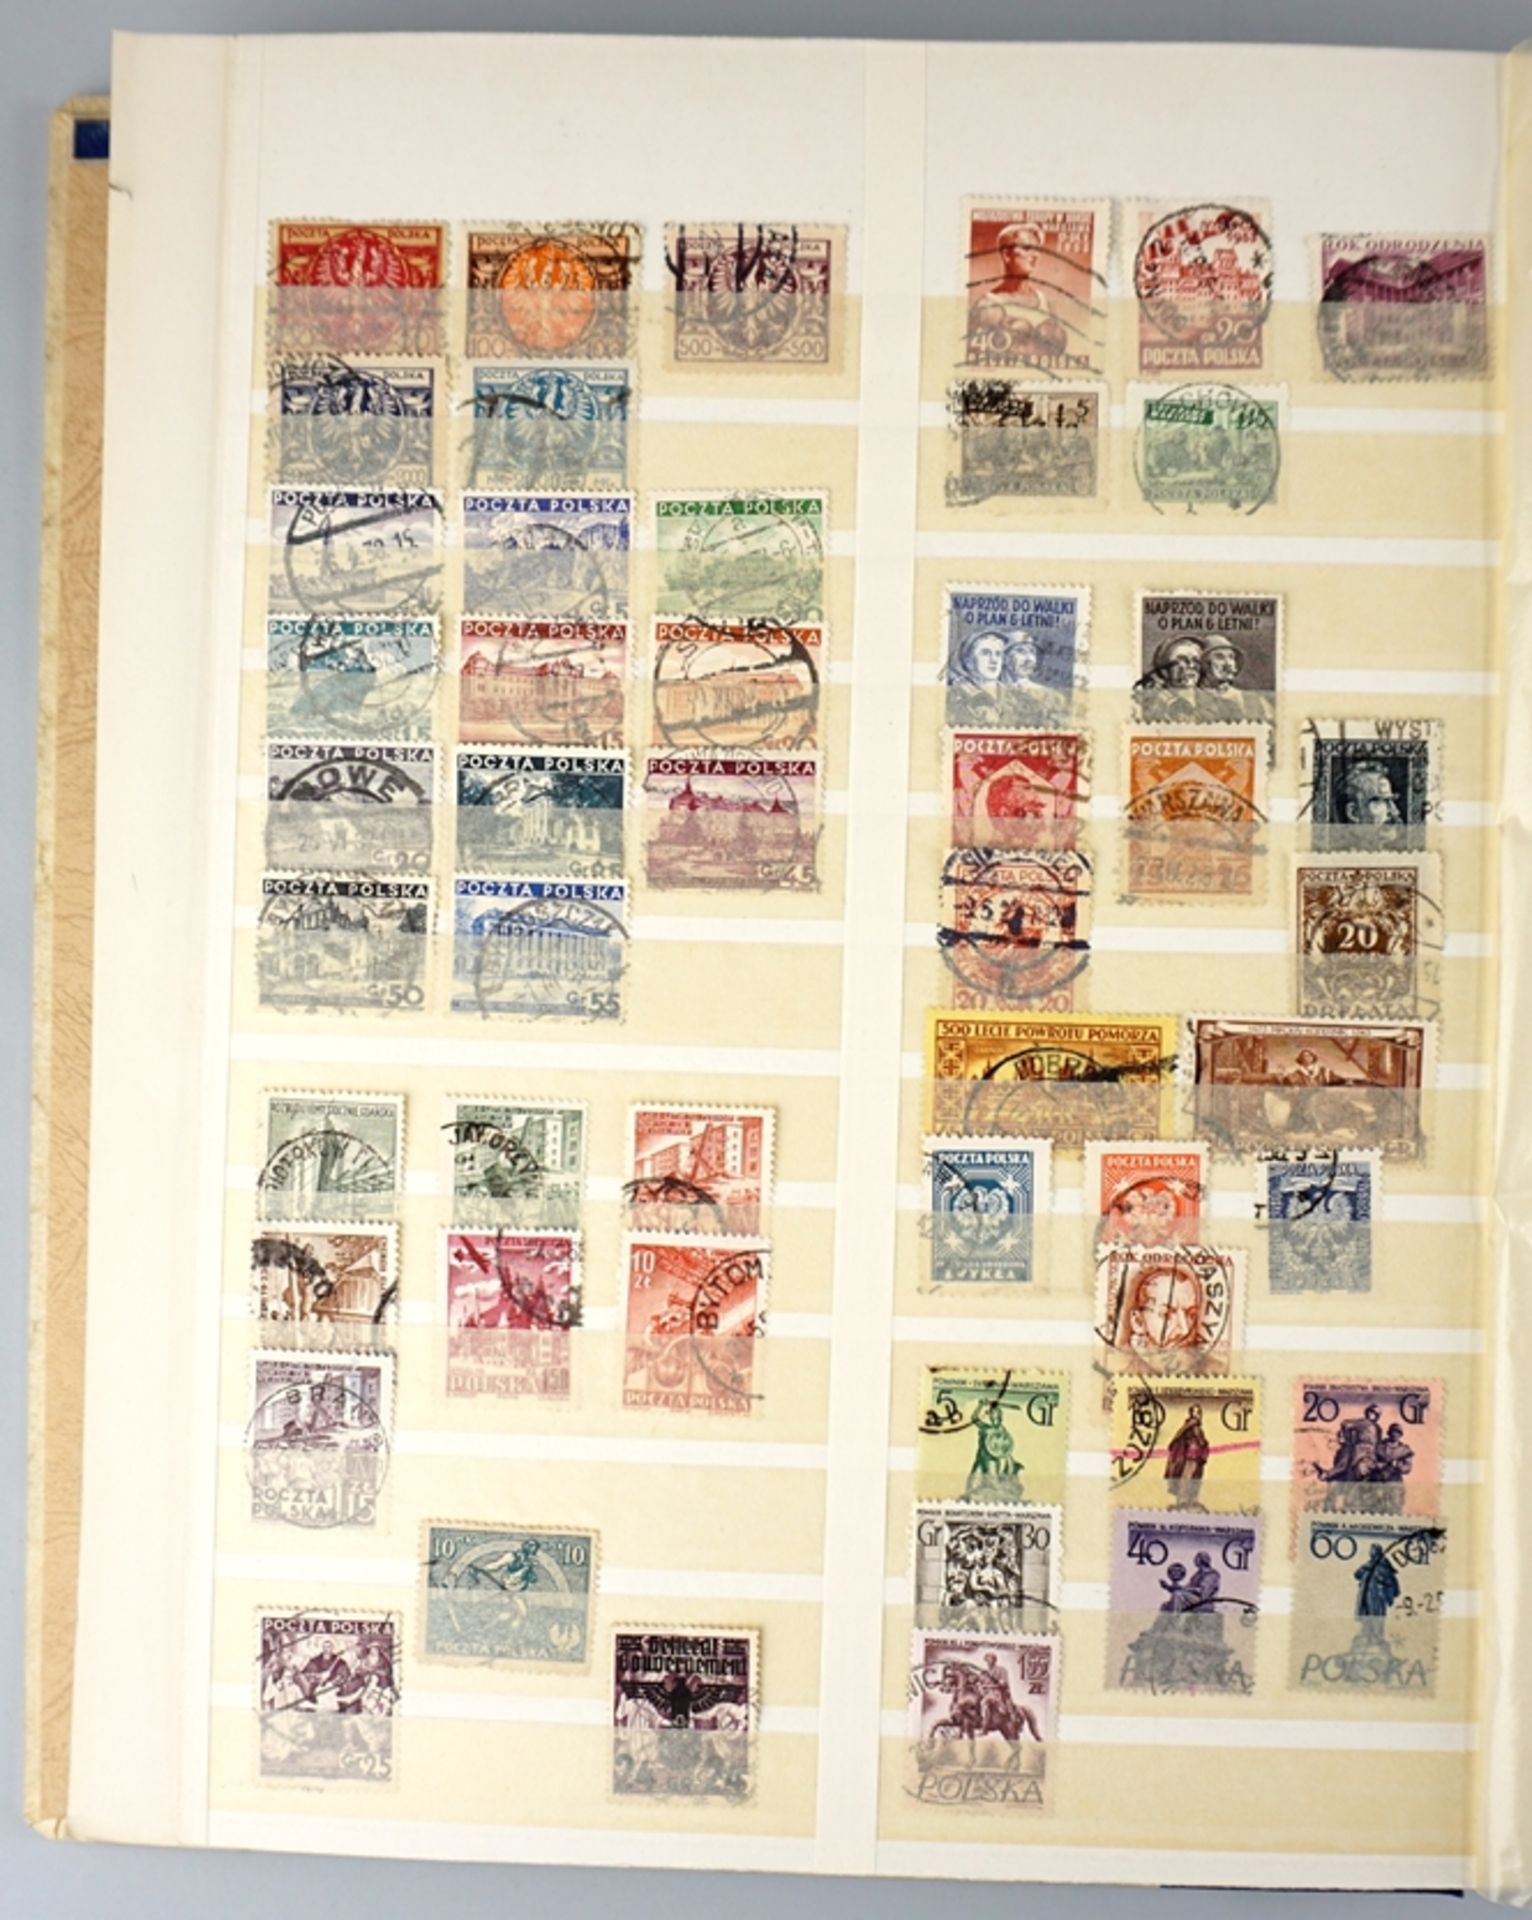 1 Album Briefmarken, Europa, Italien, Monaco, Portugal, Polen, San Marino, Spanien, Schweiz, Ungarn - Bild 2 aus 5